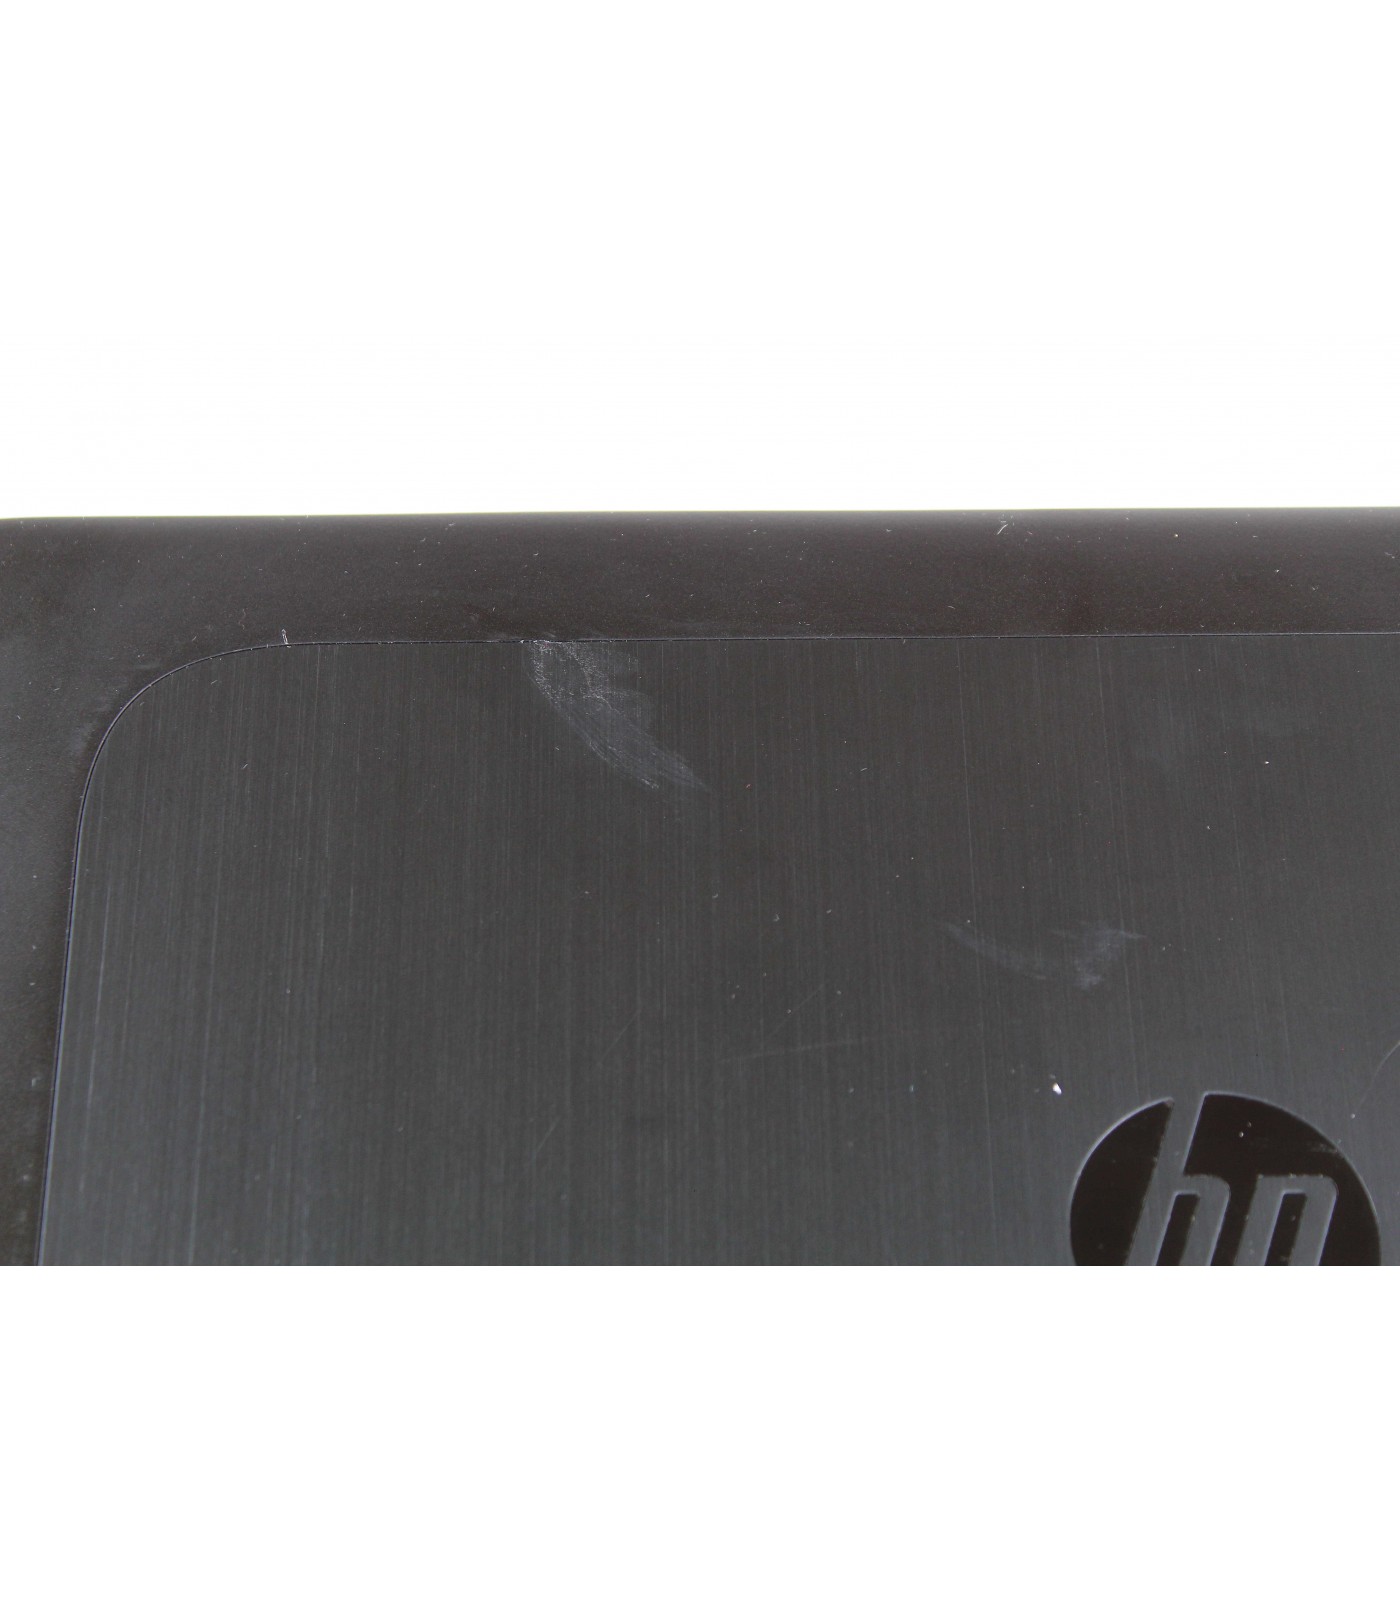 Poleasingowy HP Zbook 15 G1 z procesorem Intel I7-4800MQ w klasie B